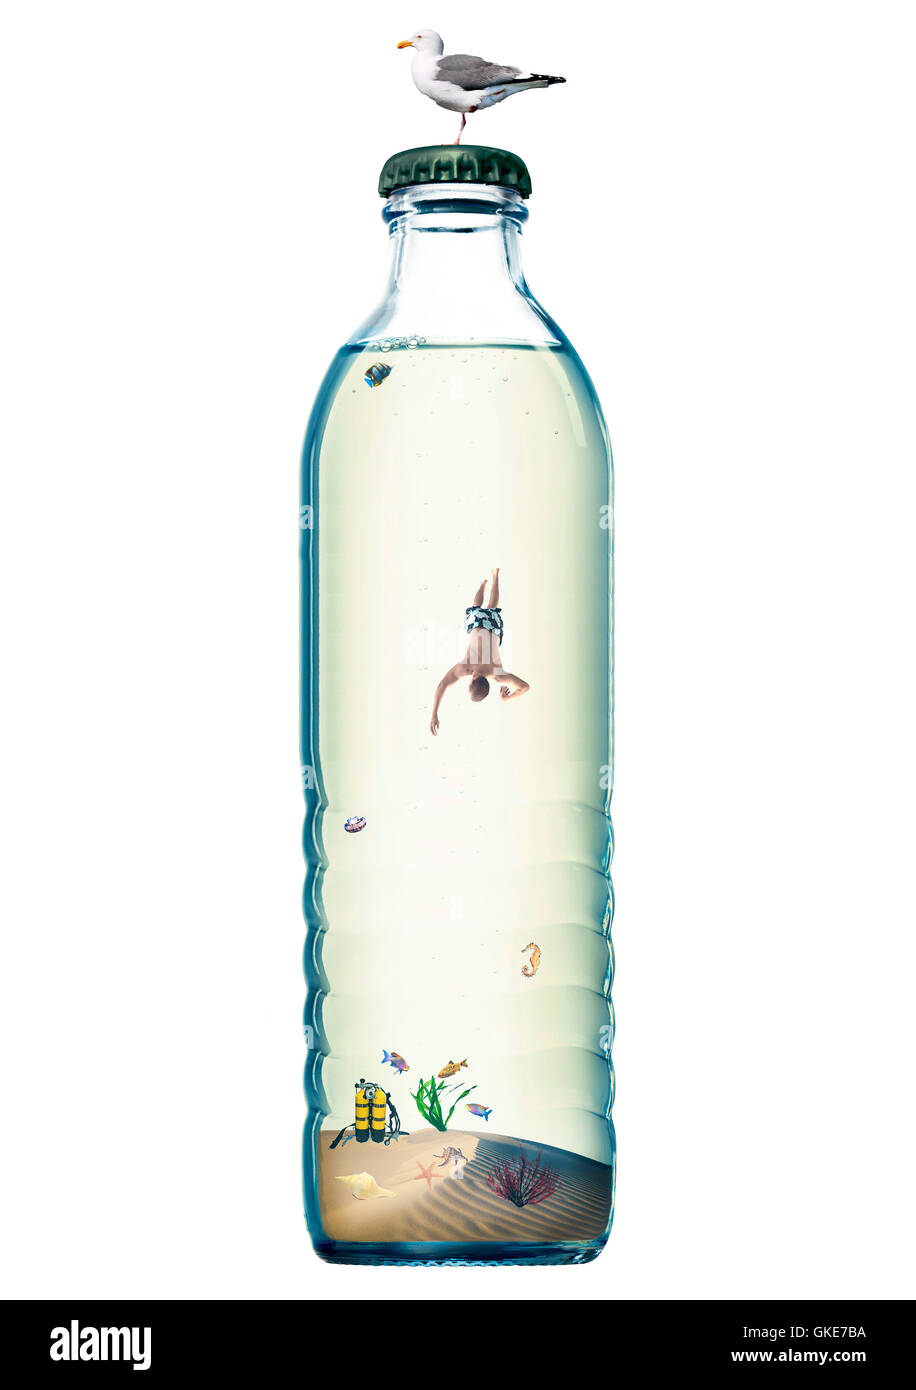 Abstrakt-Ozean in einer Flasche. Tauchen-Konzept. Isoliert auf weiss. Stockfoto